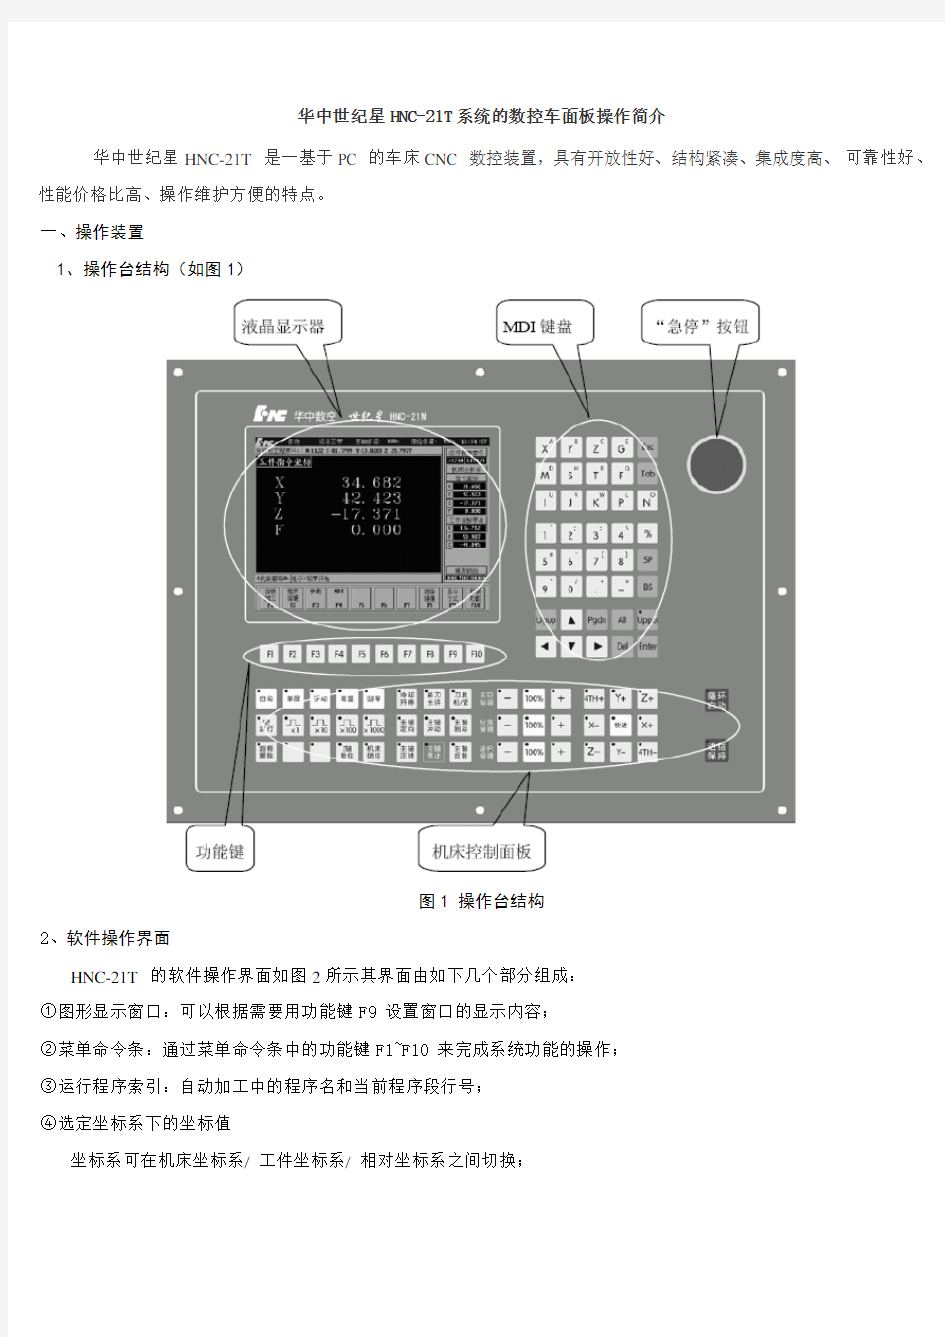 华中世纪星HNC-21T系统的数控车面板操作简介